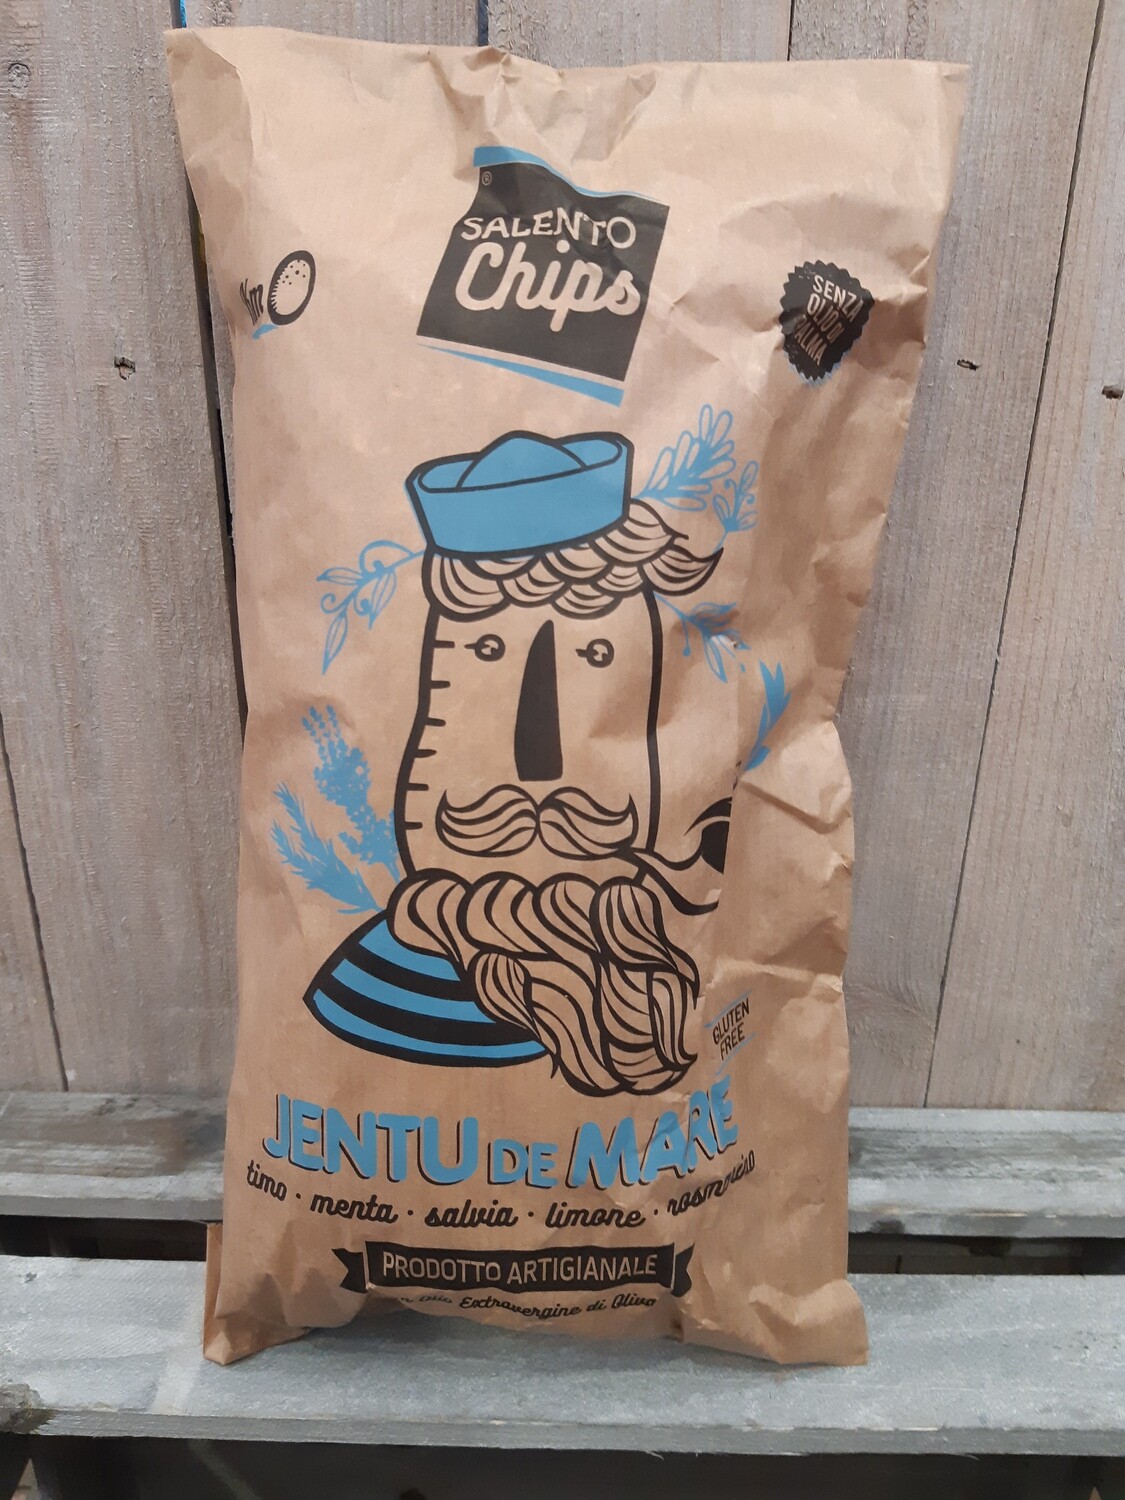 Chips de la mer SALENTO